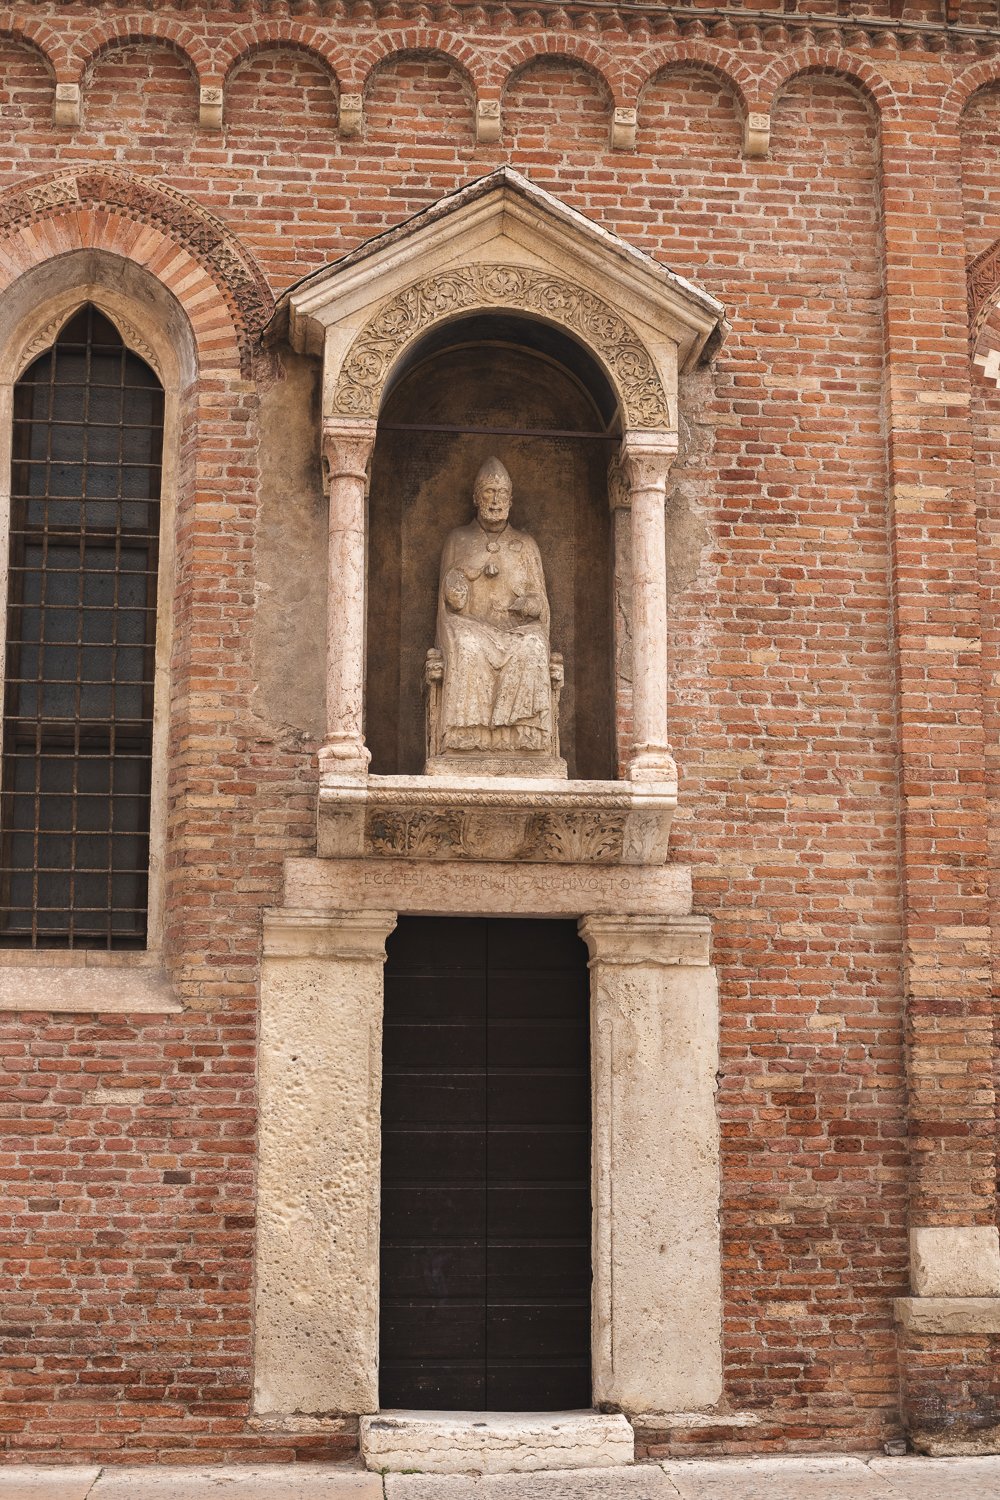 Une porte annexe. La porte est surplombée d'une statue d'un personne ecclésiastique assis